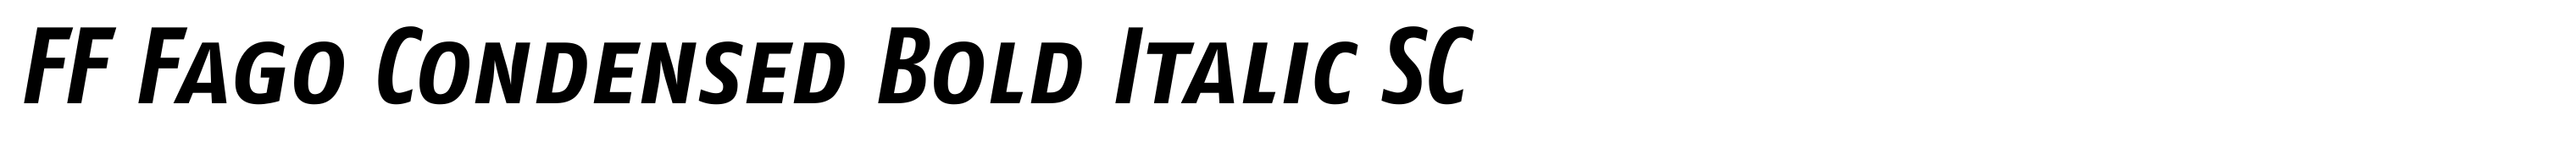 FF Fago Condensed Bold Italic SC